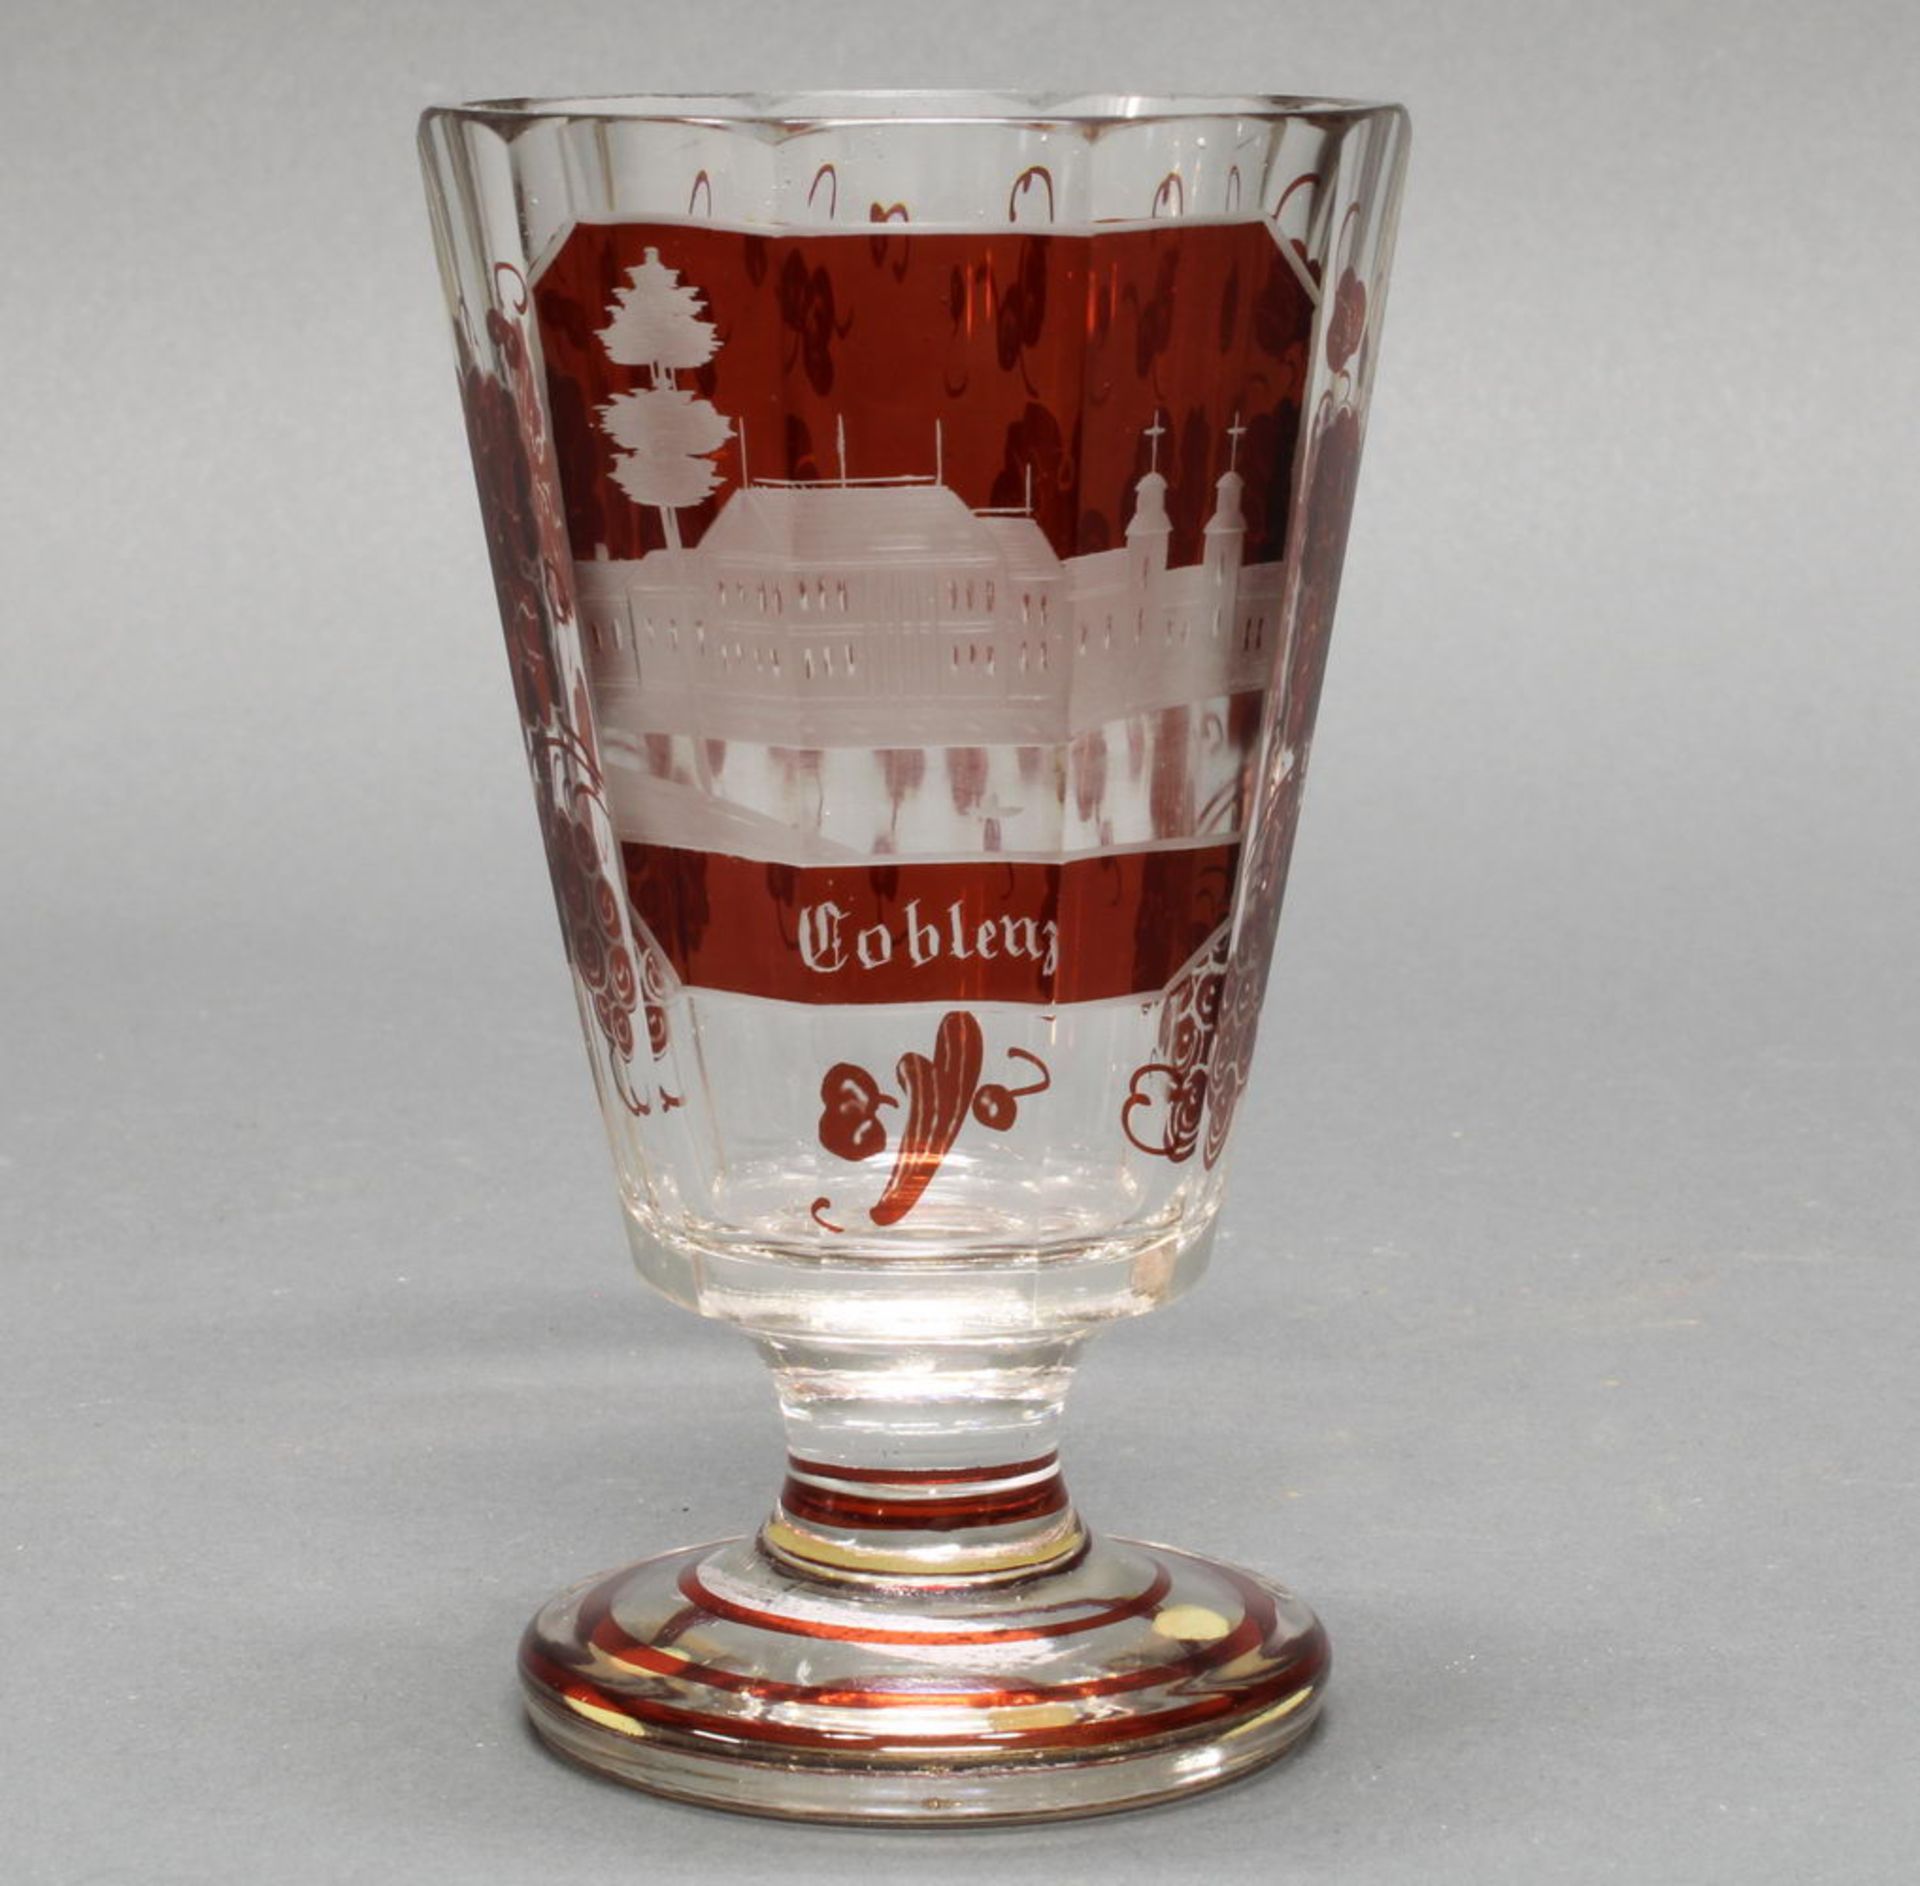 Souvenirbecher, "Coblenz", 1870er Jahre, farbloses Kristallglas, rubinroter Überfangdekor, geschni